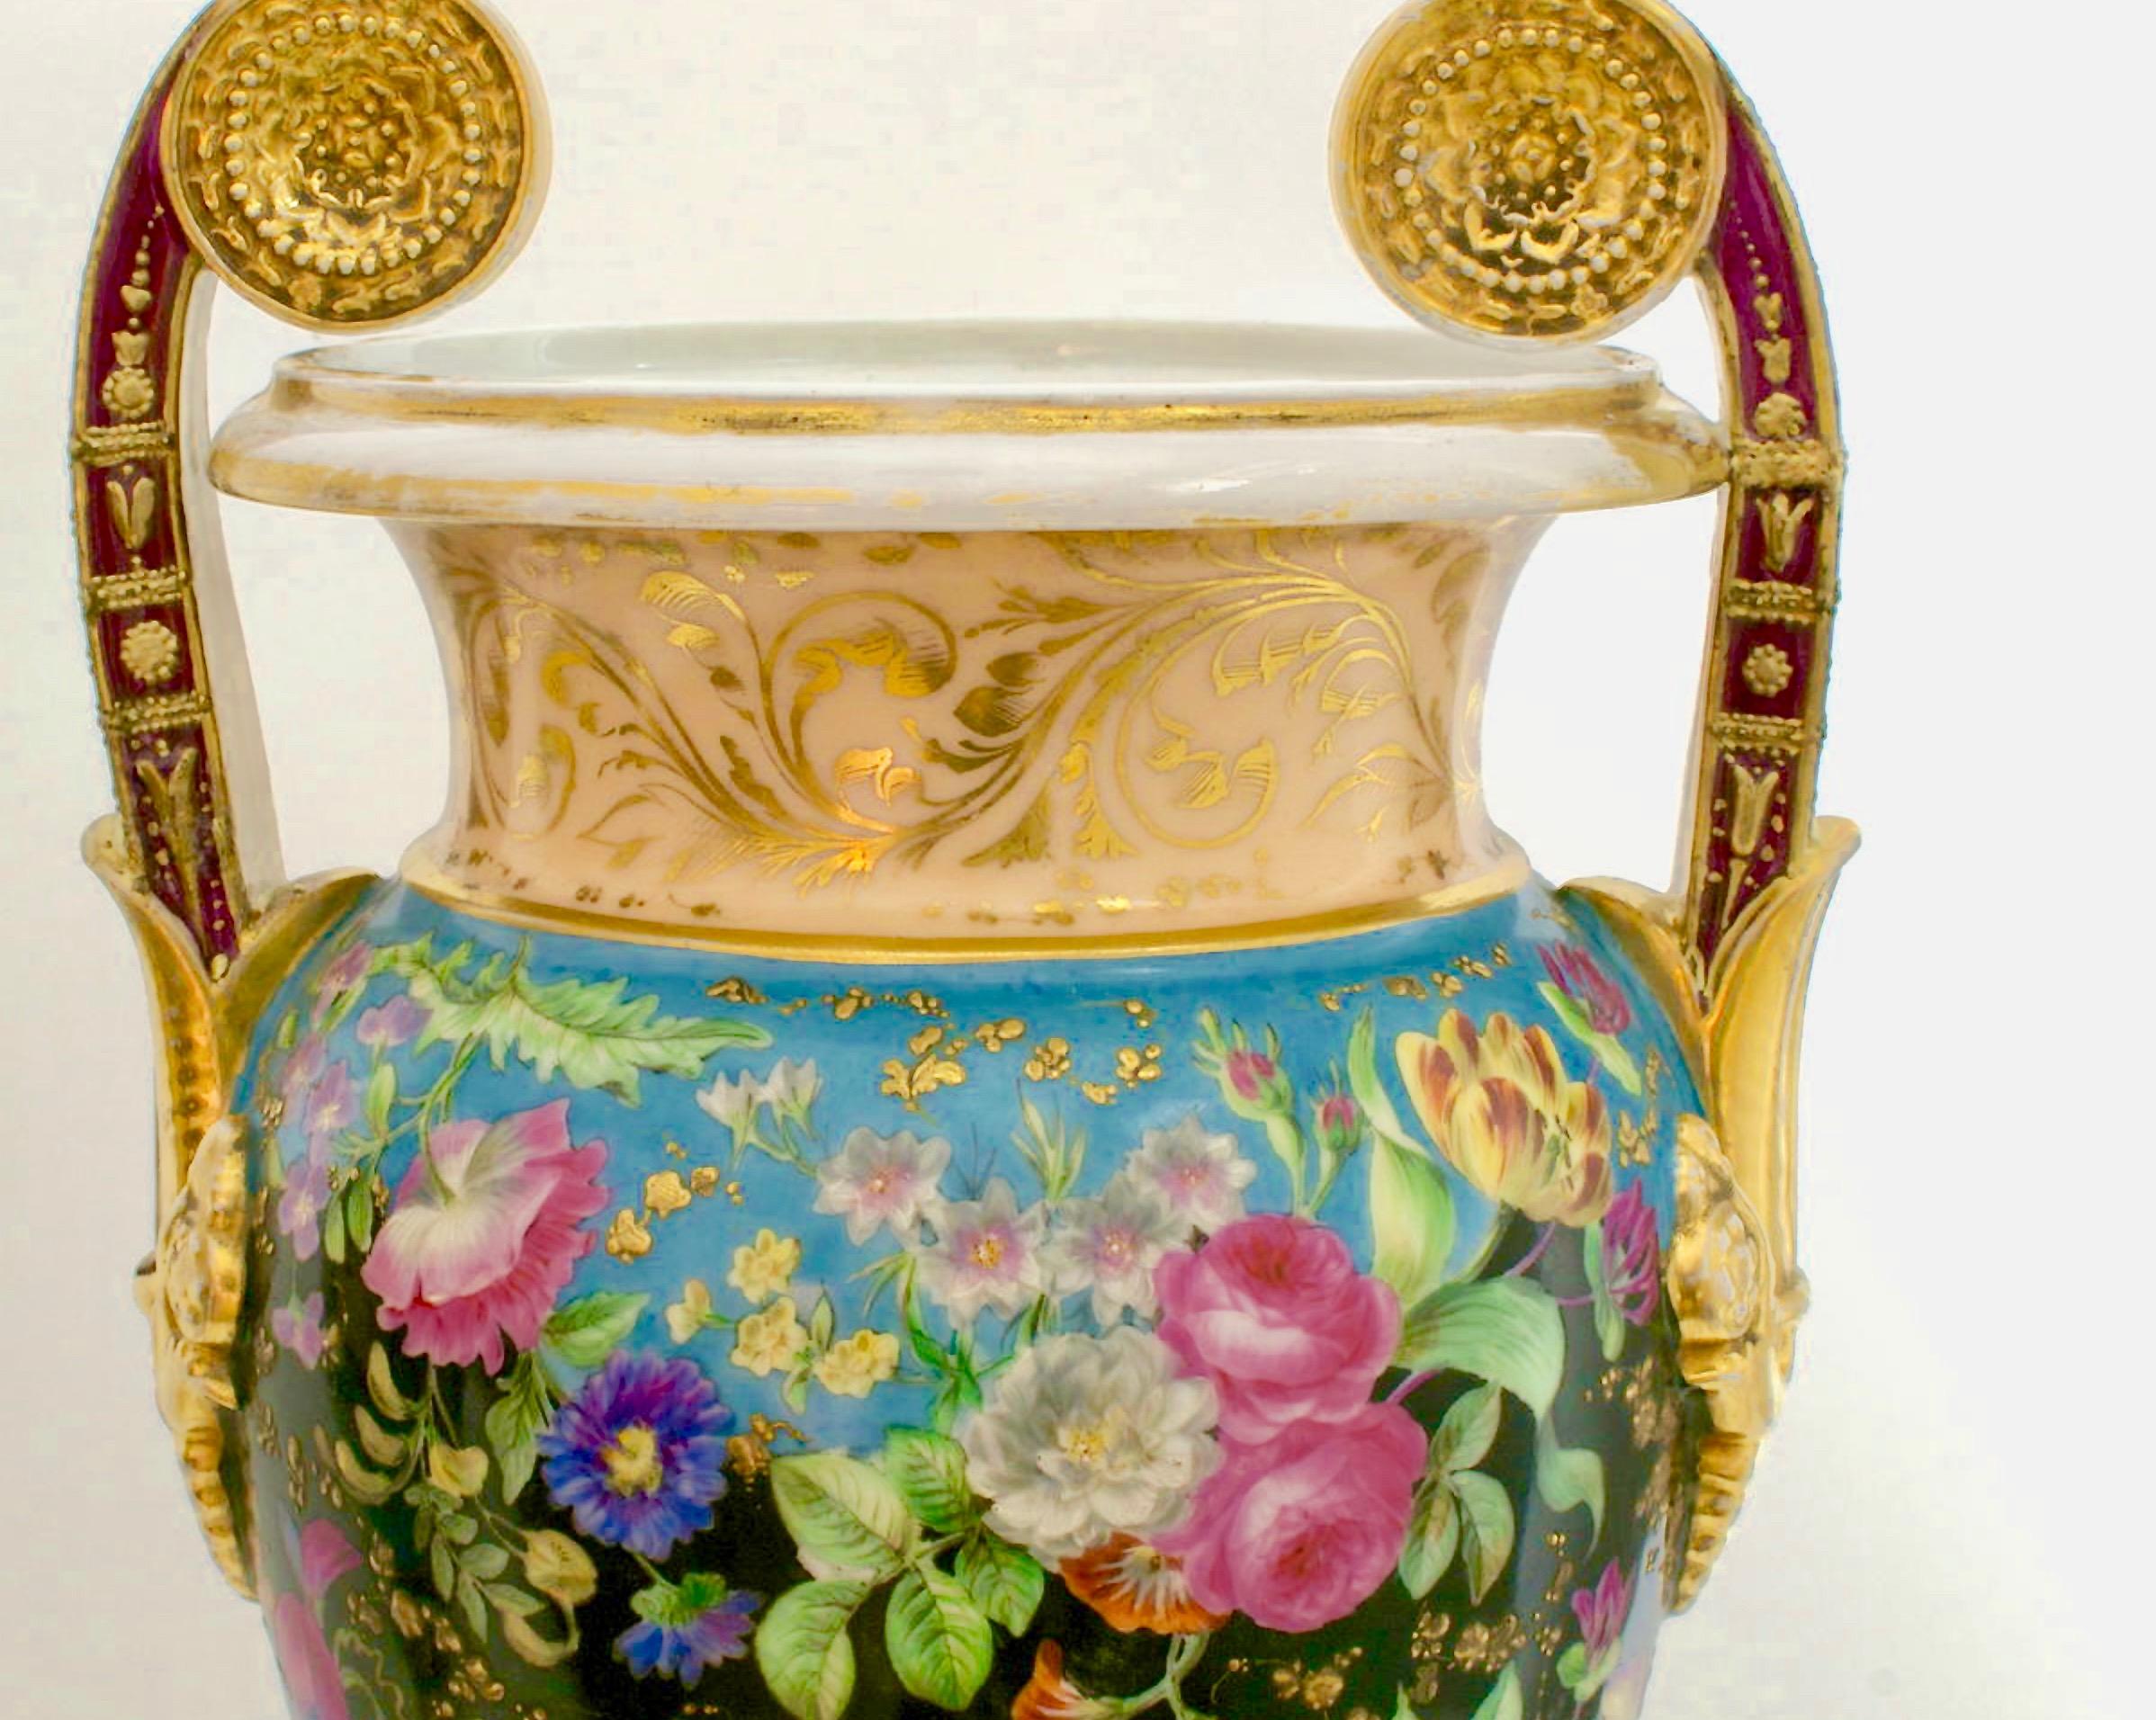 Ein Paar Porzellanurnen aus der Kaiserzeit, wahrscheinlich russisch. Mit Blumen bemalt und vergoldet.